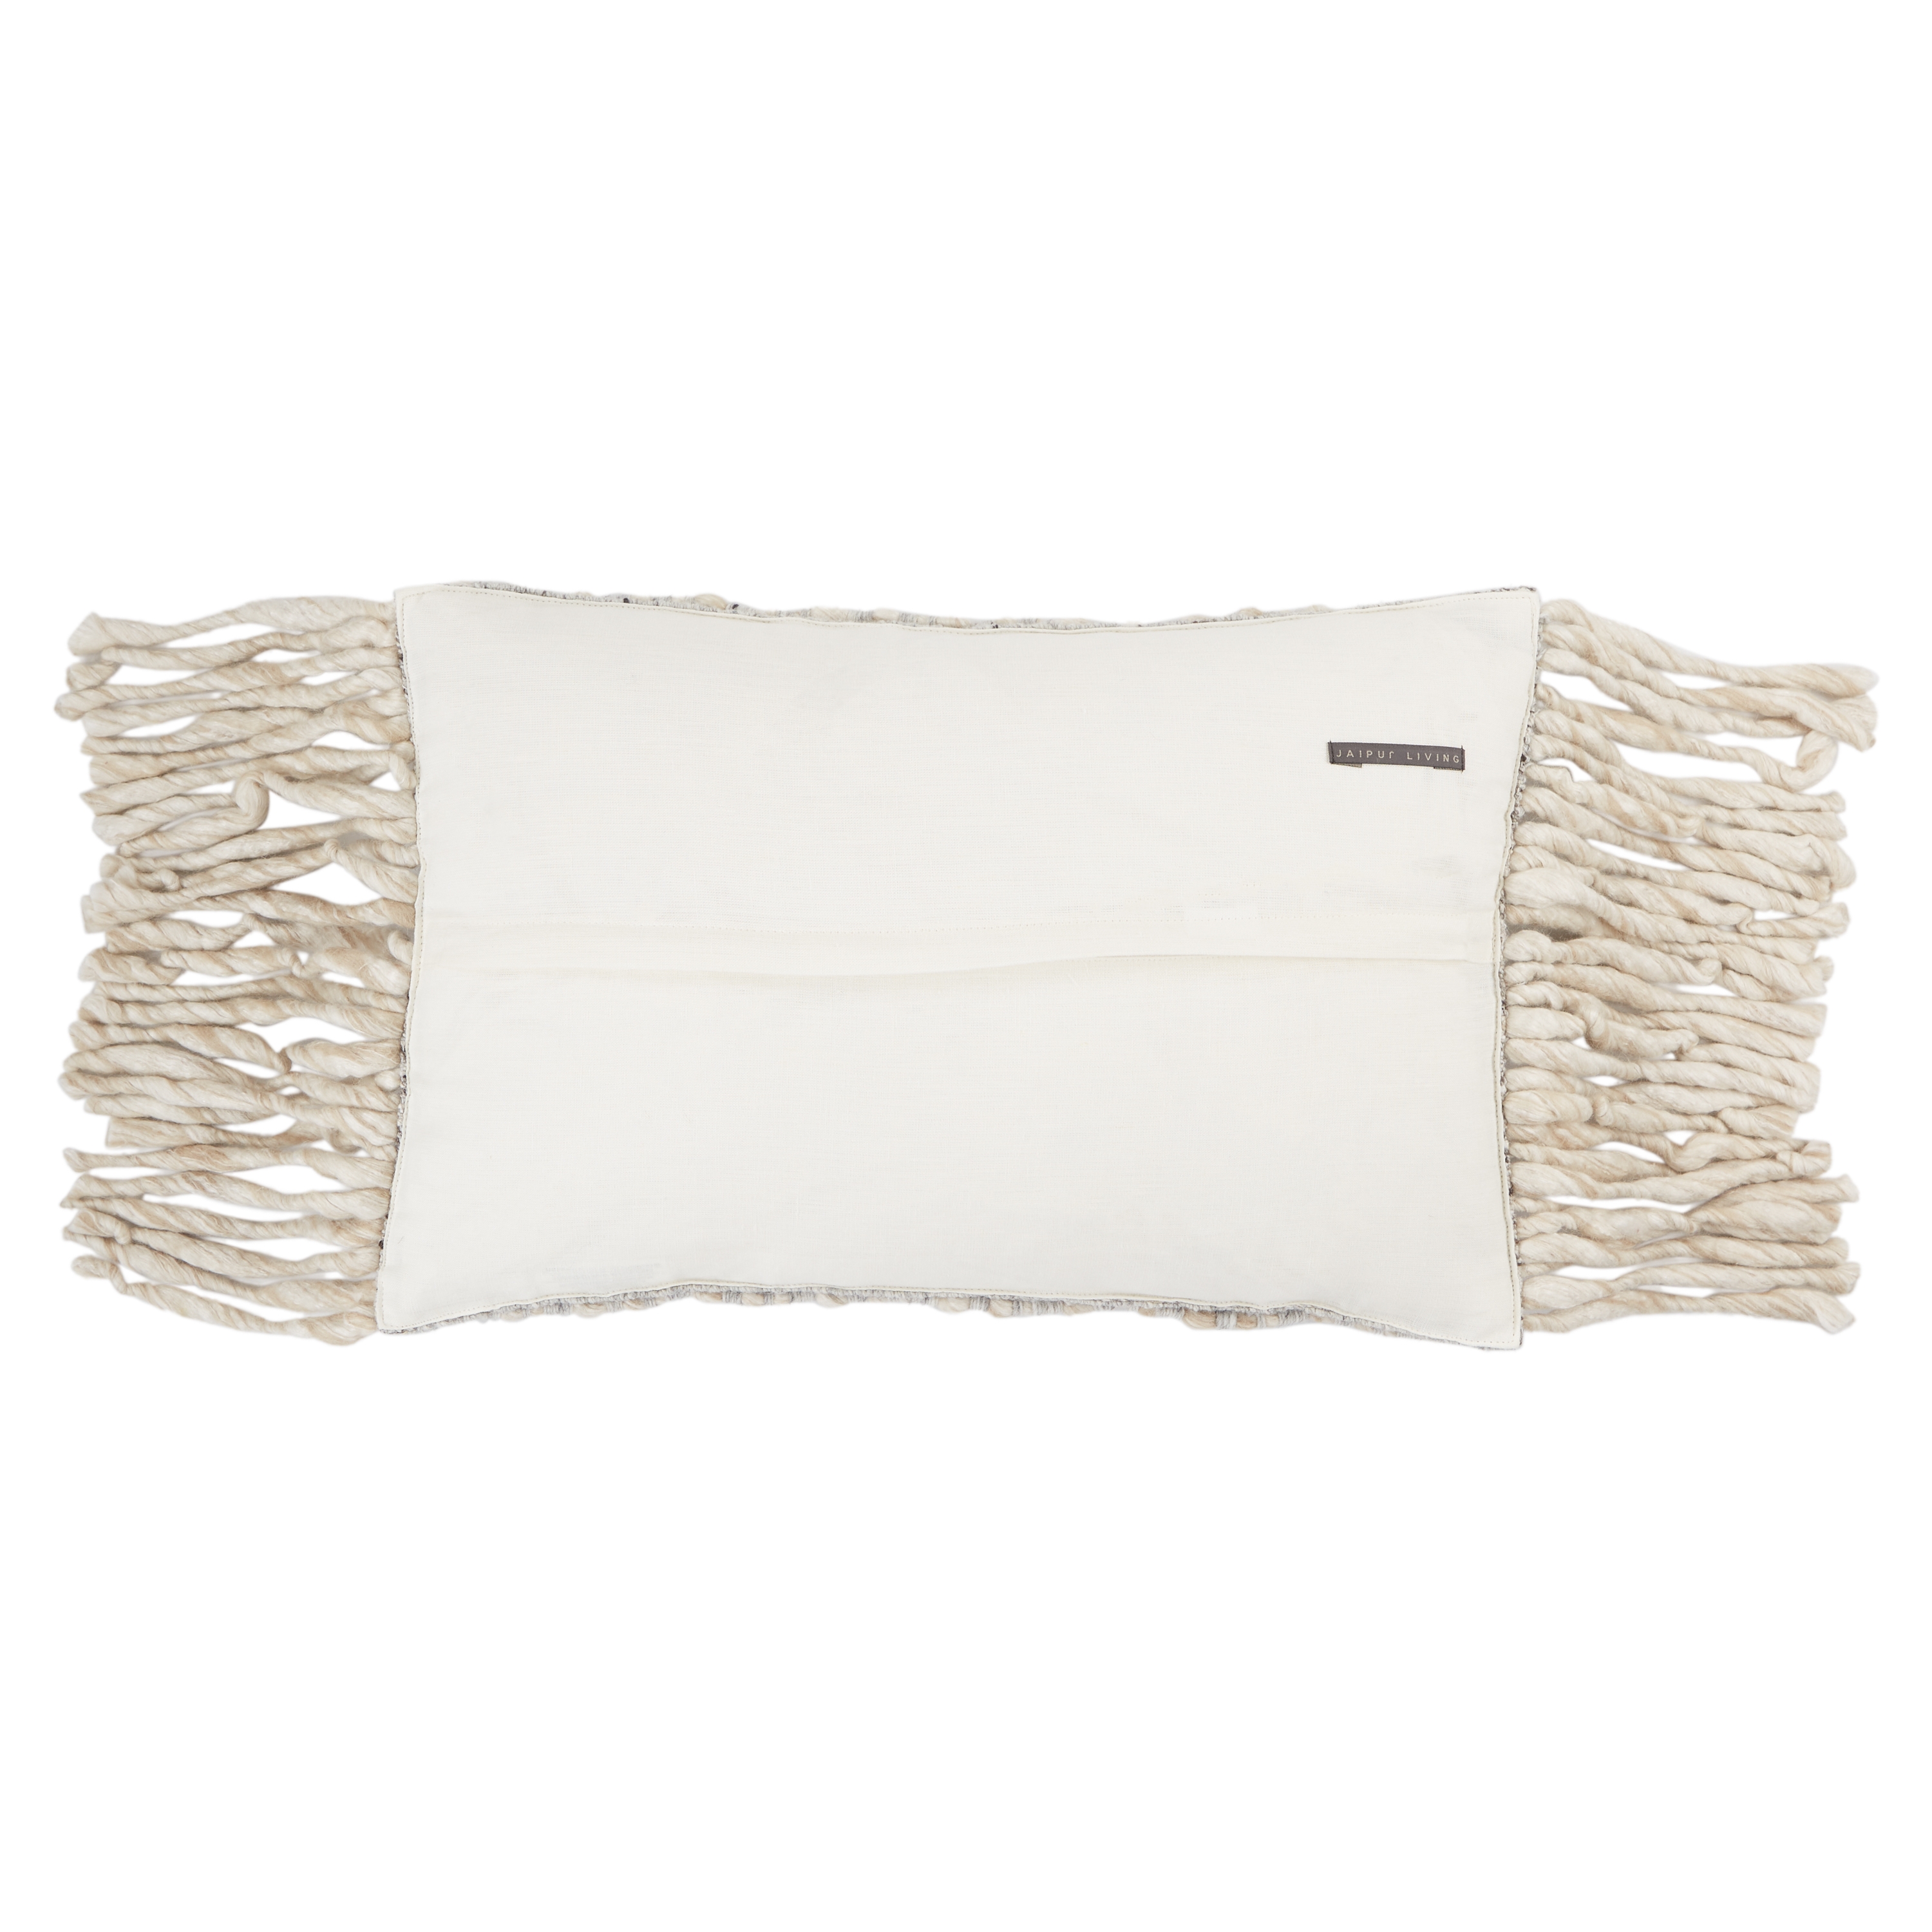 Cilo Lumbar Pillow, Tapioca, 24" x 16" - Image 1